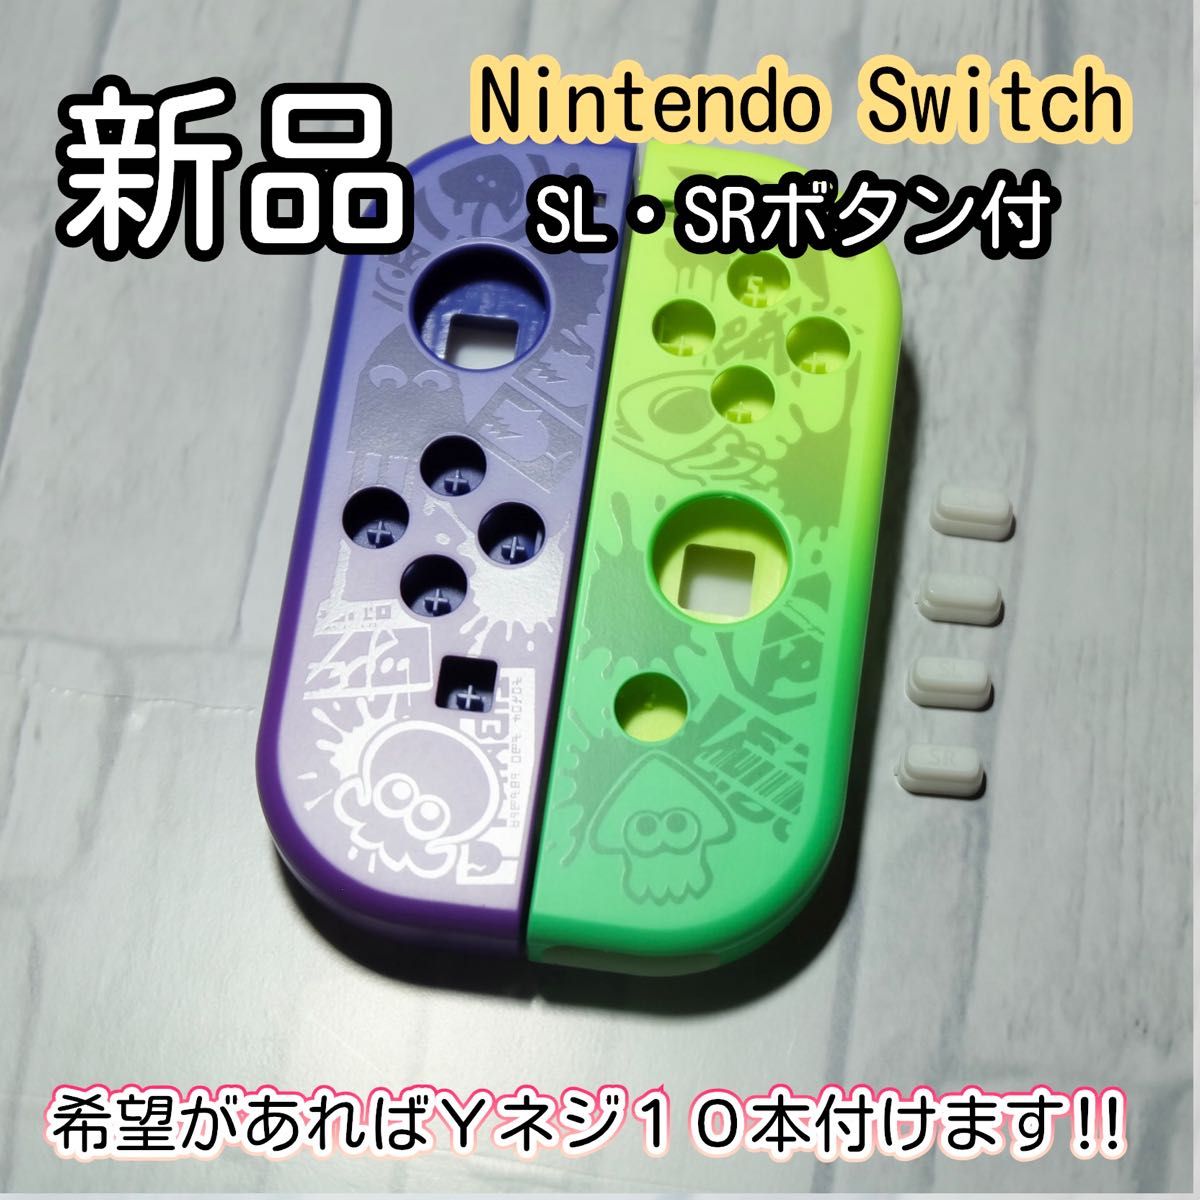 新品未使用品 Nintendo switch ジョイコン ハウジング シェル｜PayPay